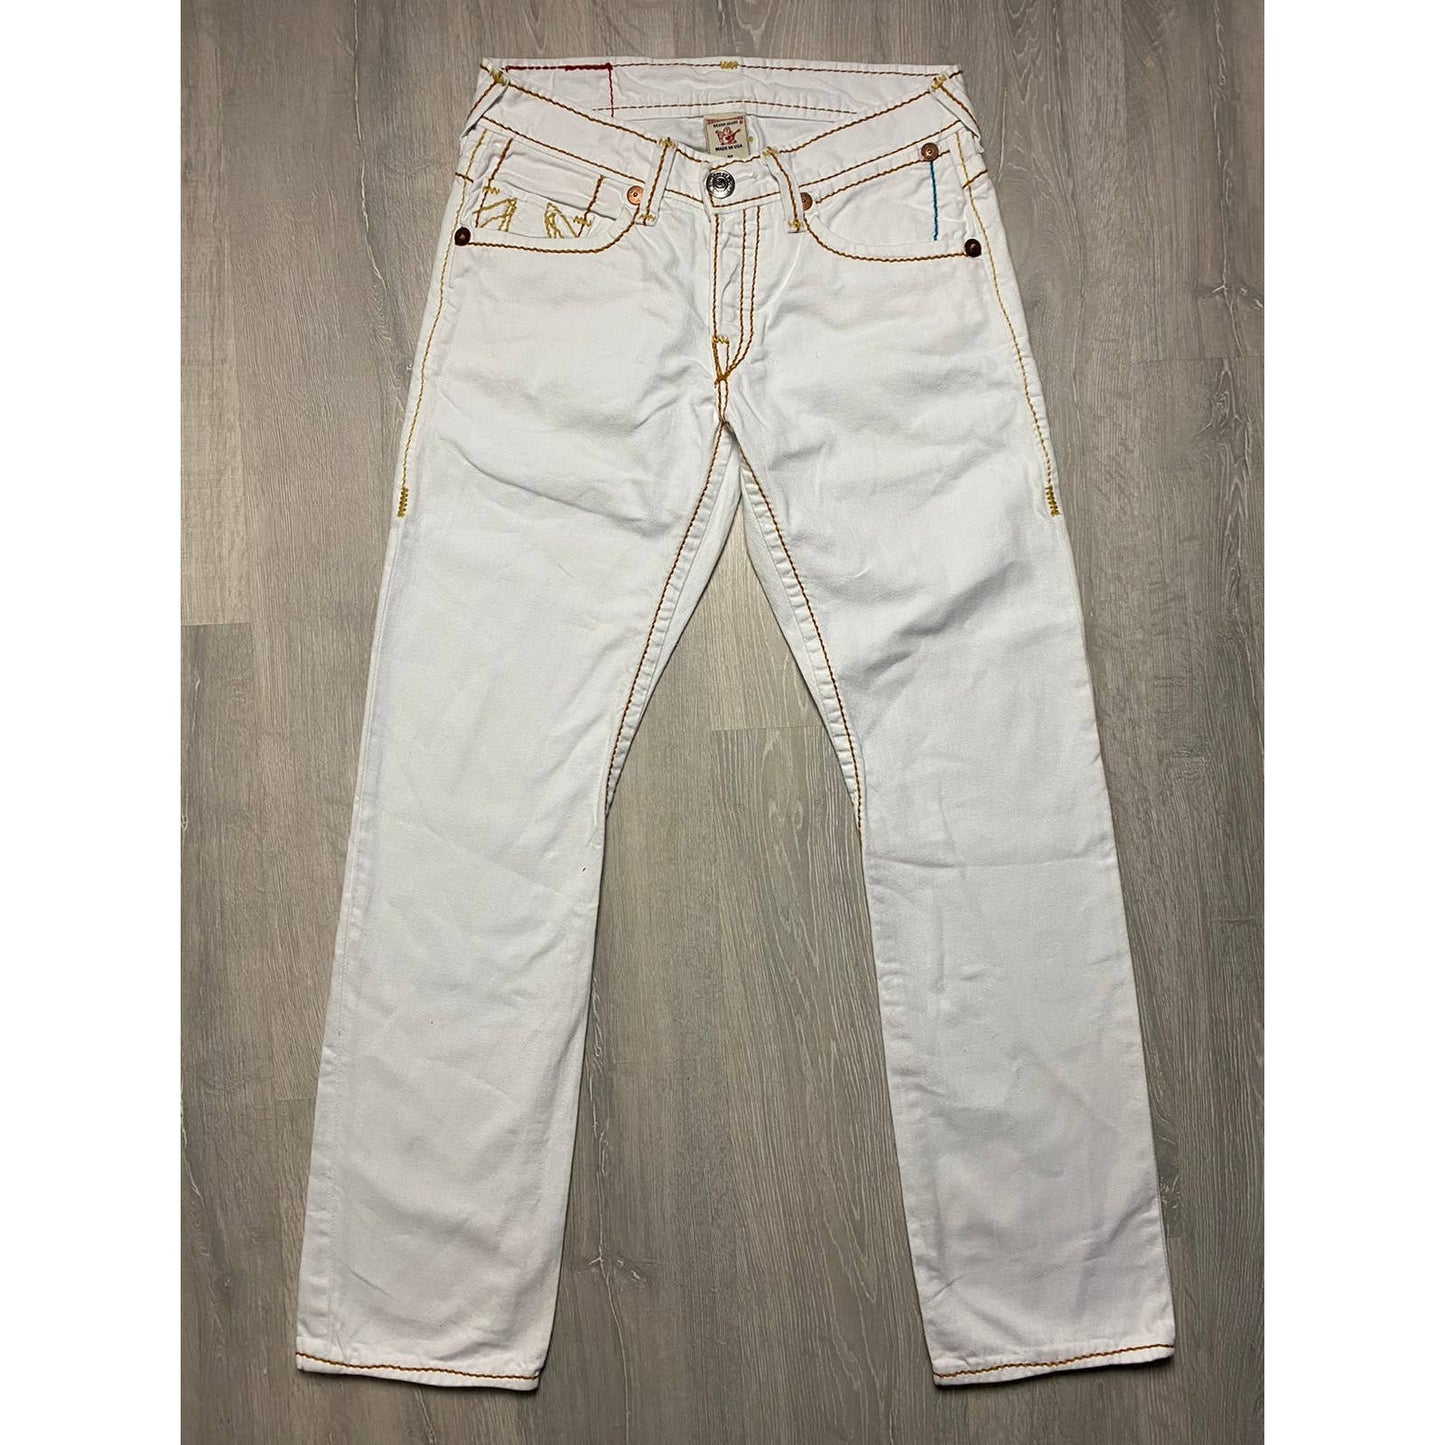 True Religion vintage white jeans Orange thick stitching Y2K